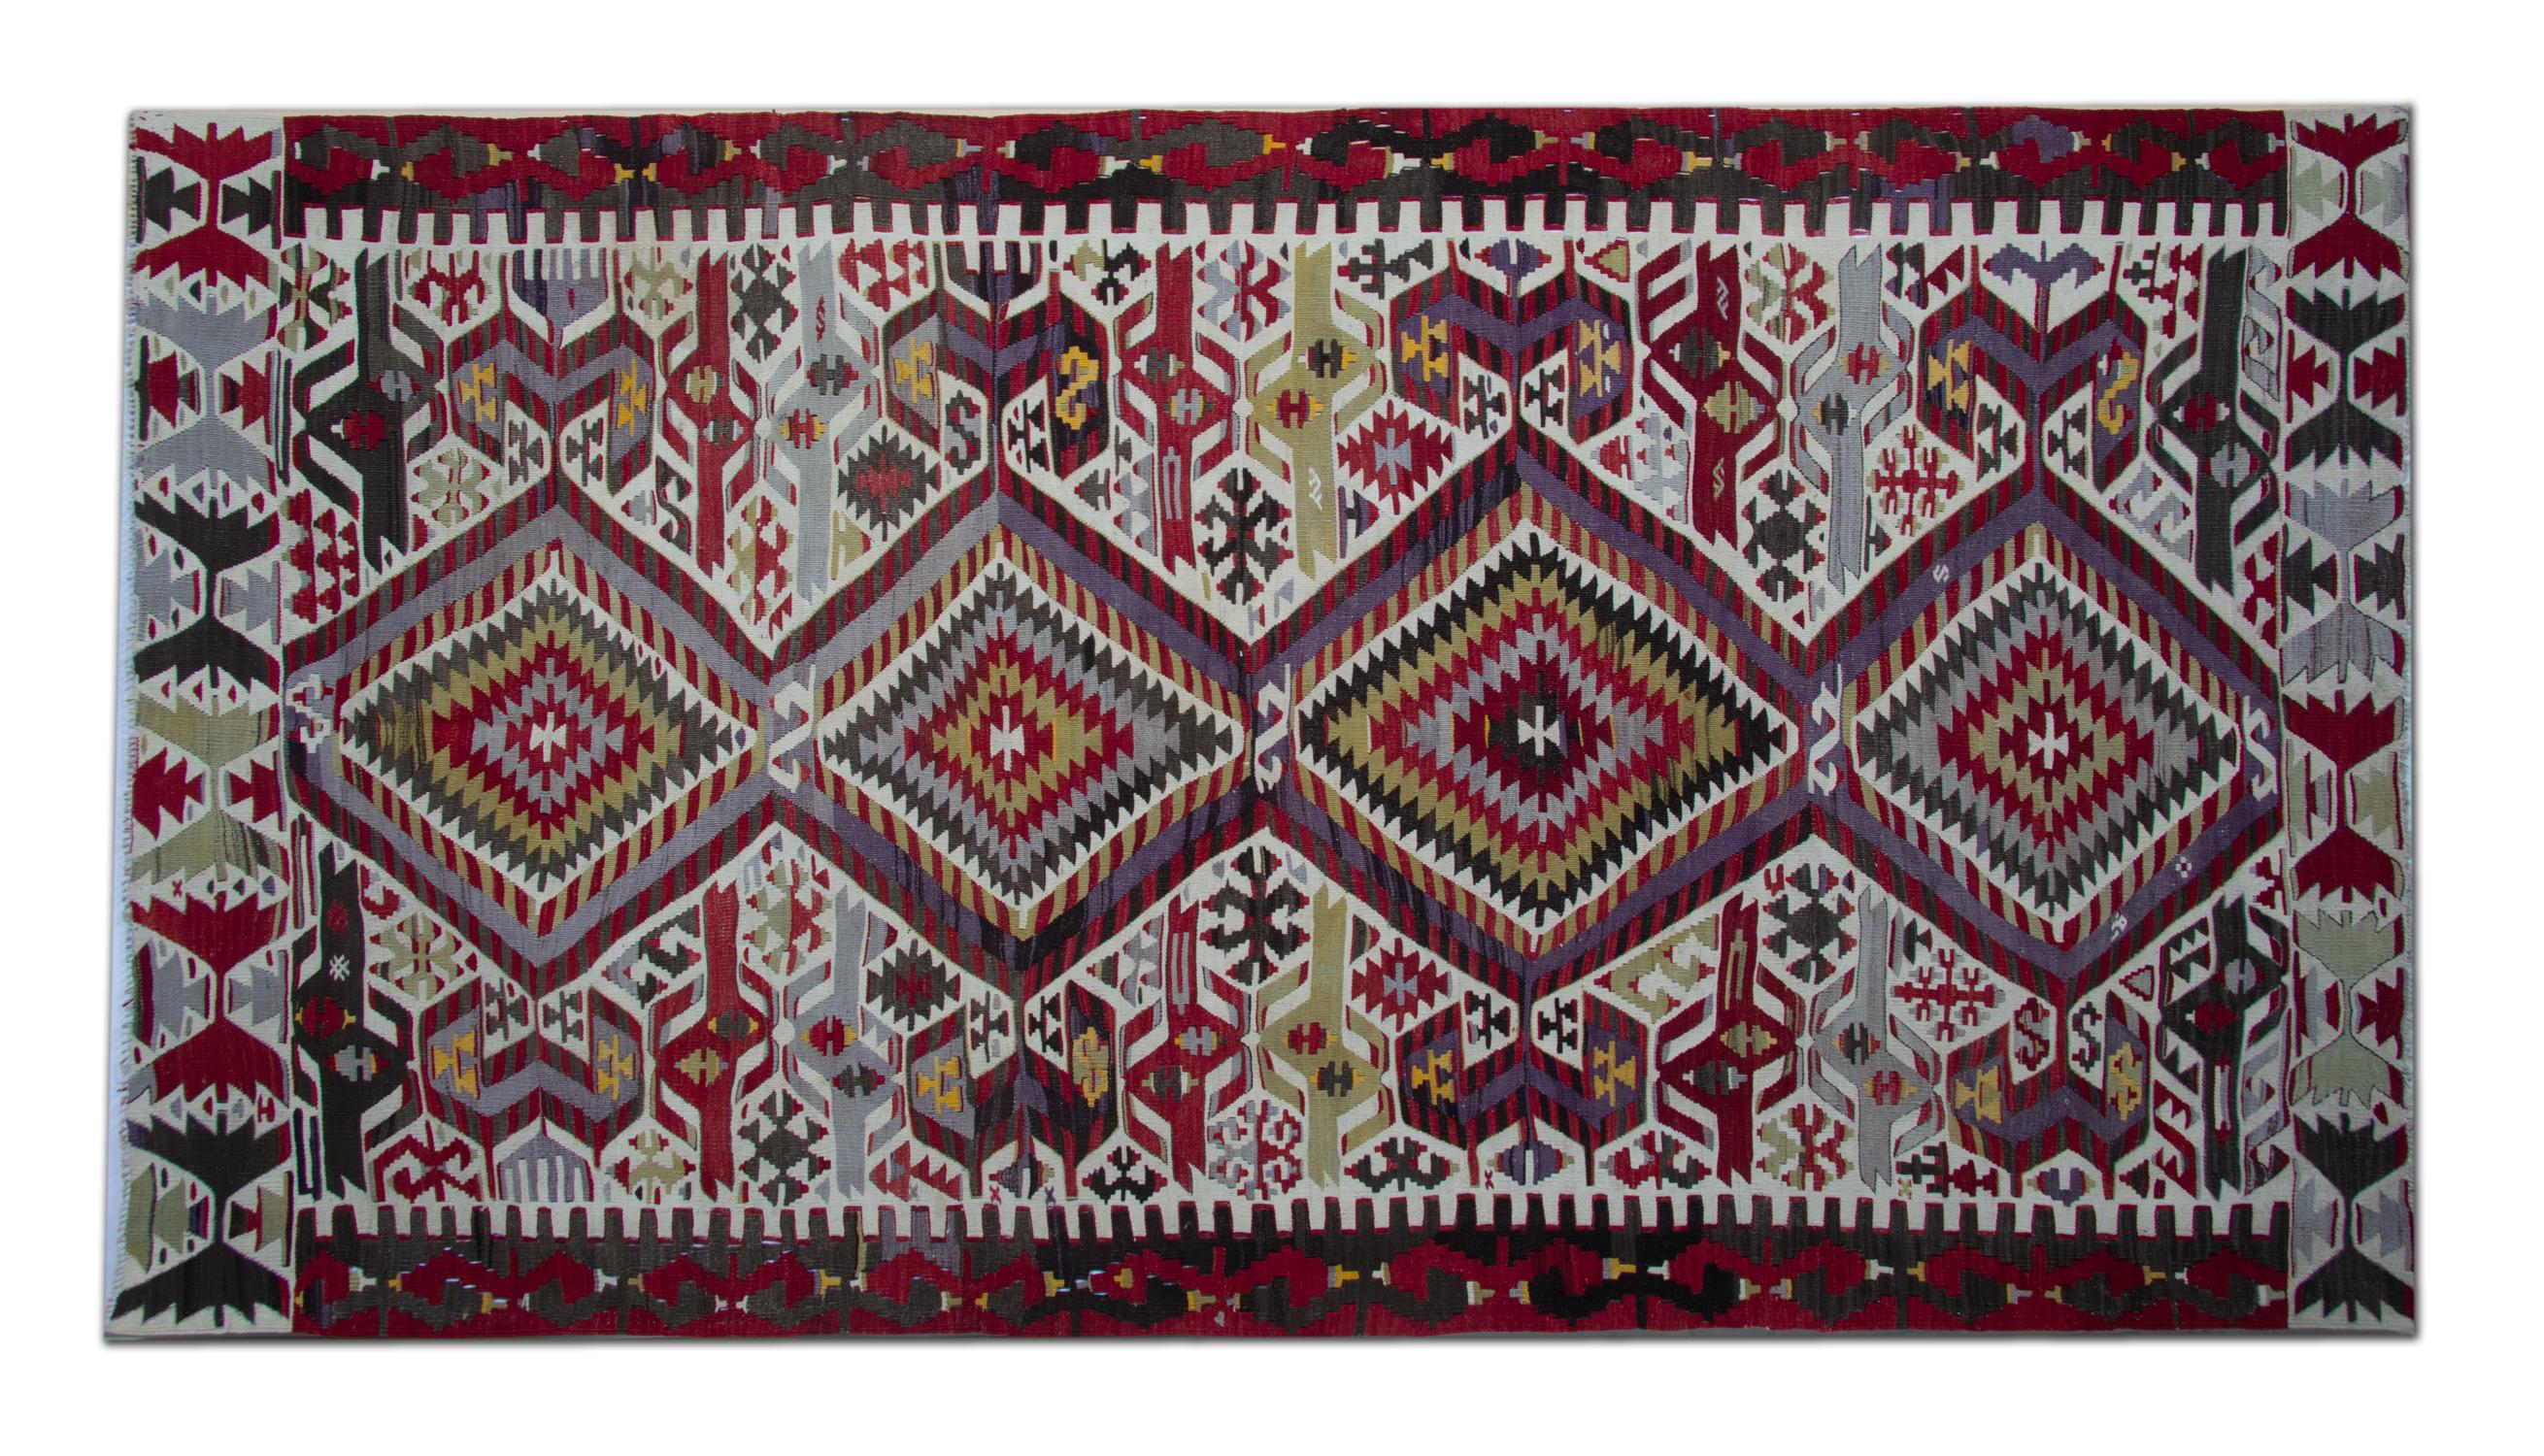 Dieser handgefertigte türkische Teppich ist ein antiker, traditioneller, handgewebter Läufer, der aus der Türkei stammt. Die Welt des Teppichdesigns. Diese Art von Teppichläufer eignet sich für Treppenläufer und Flurteppiche oder Wohnzimmerteppiche.